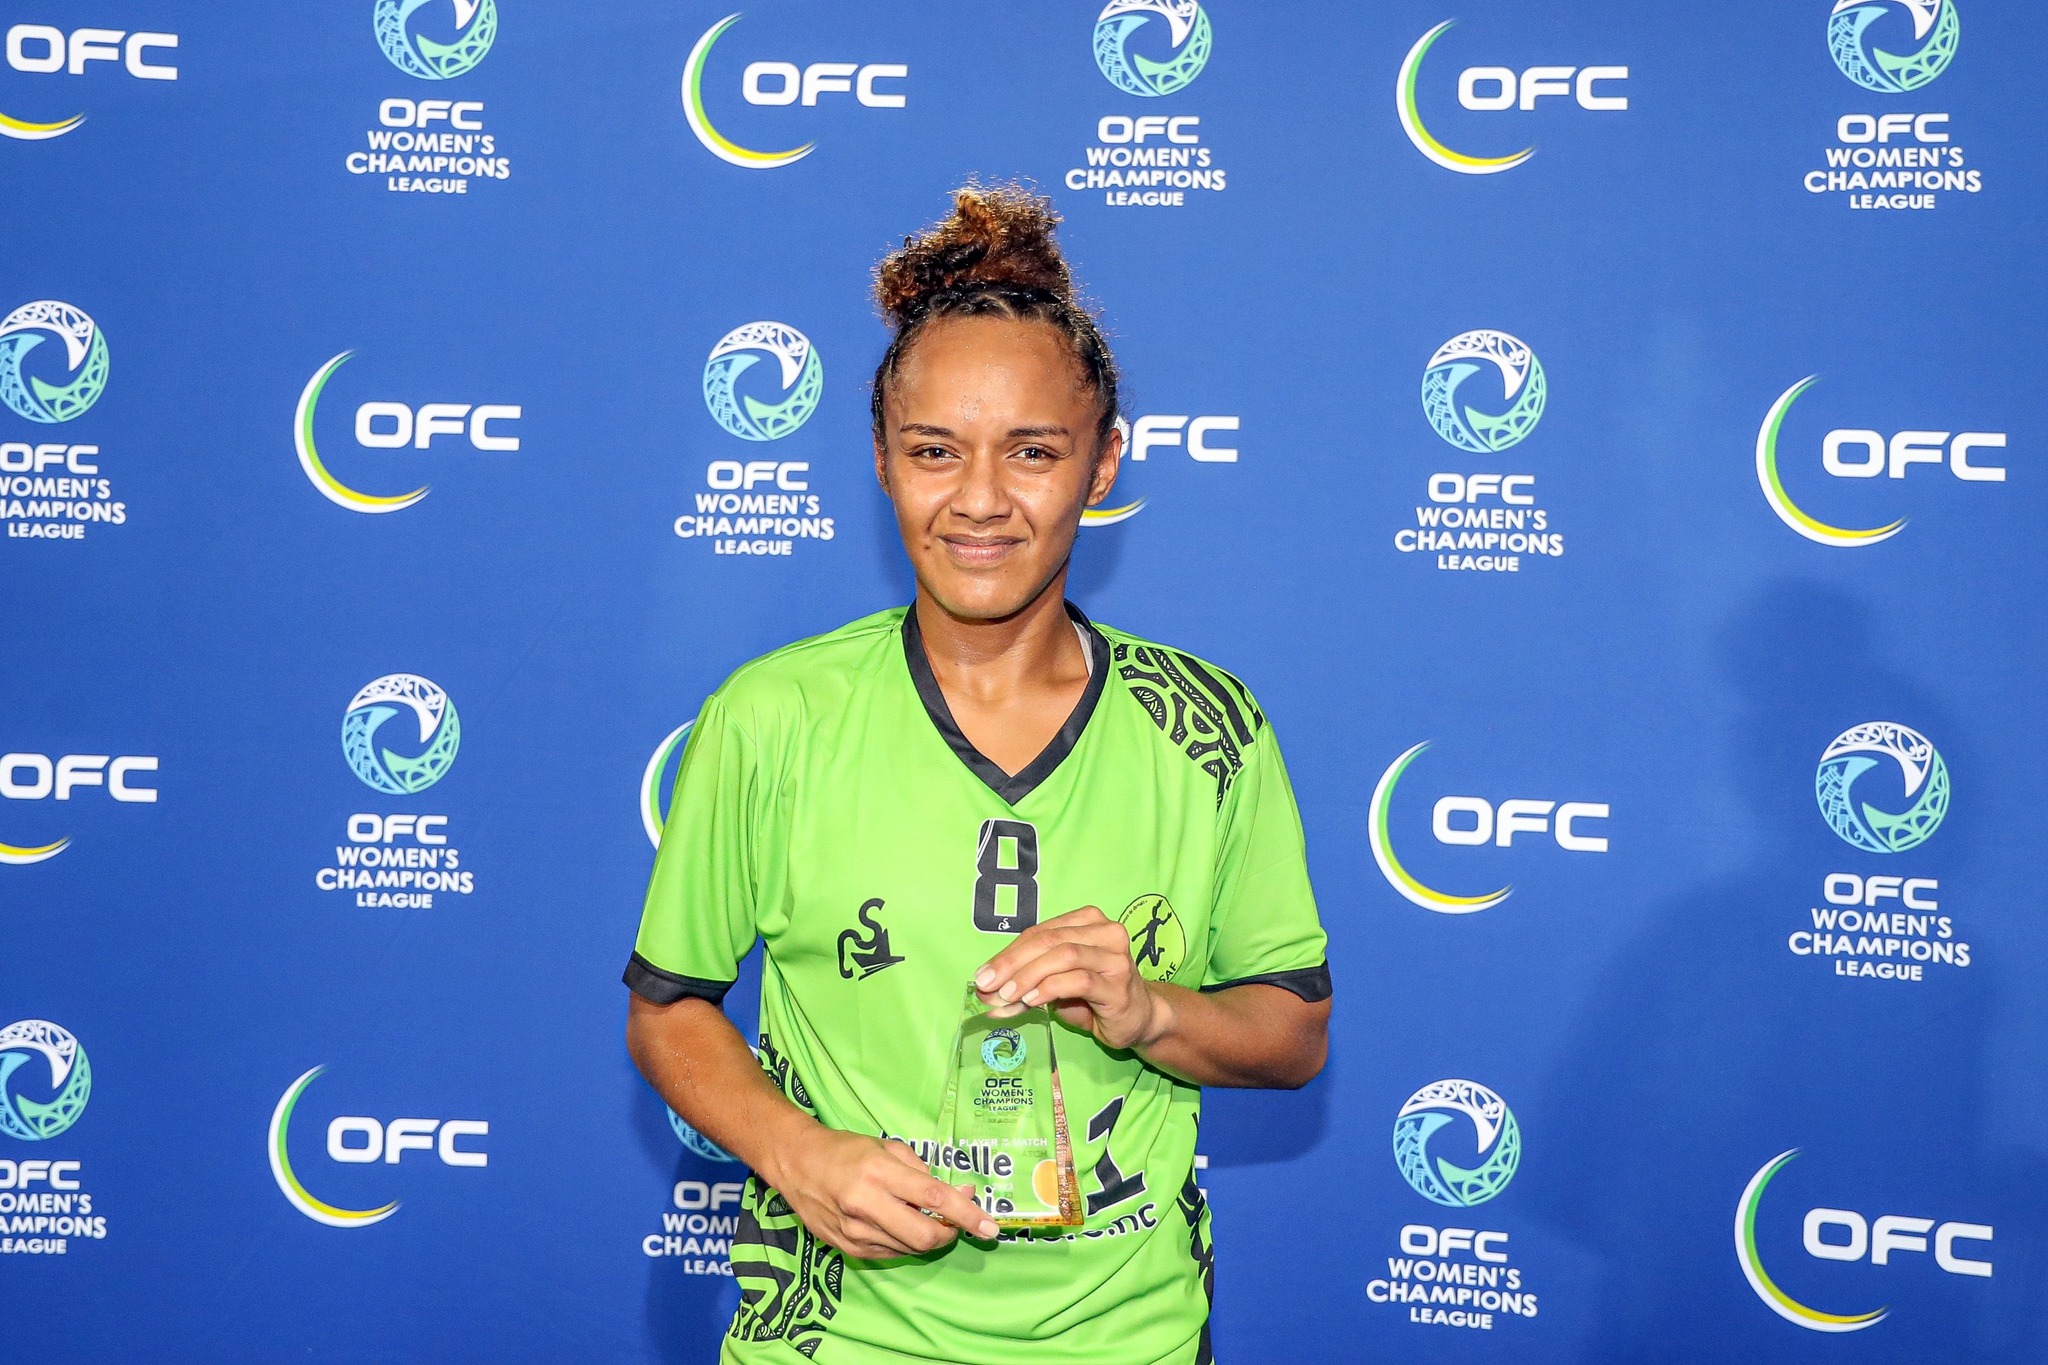 HEKARI FC 1 - 2 ASAF | OFC WOMEN'S CHAMPIONS LEAGUE (Day 1) | Victoire historique pour l'ASAF